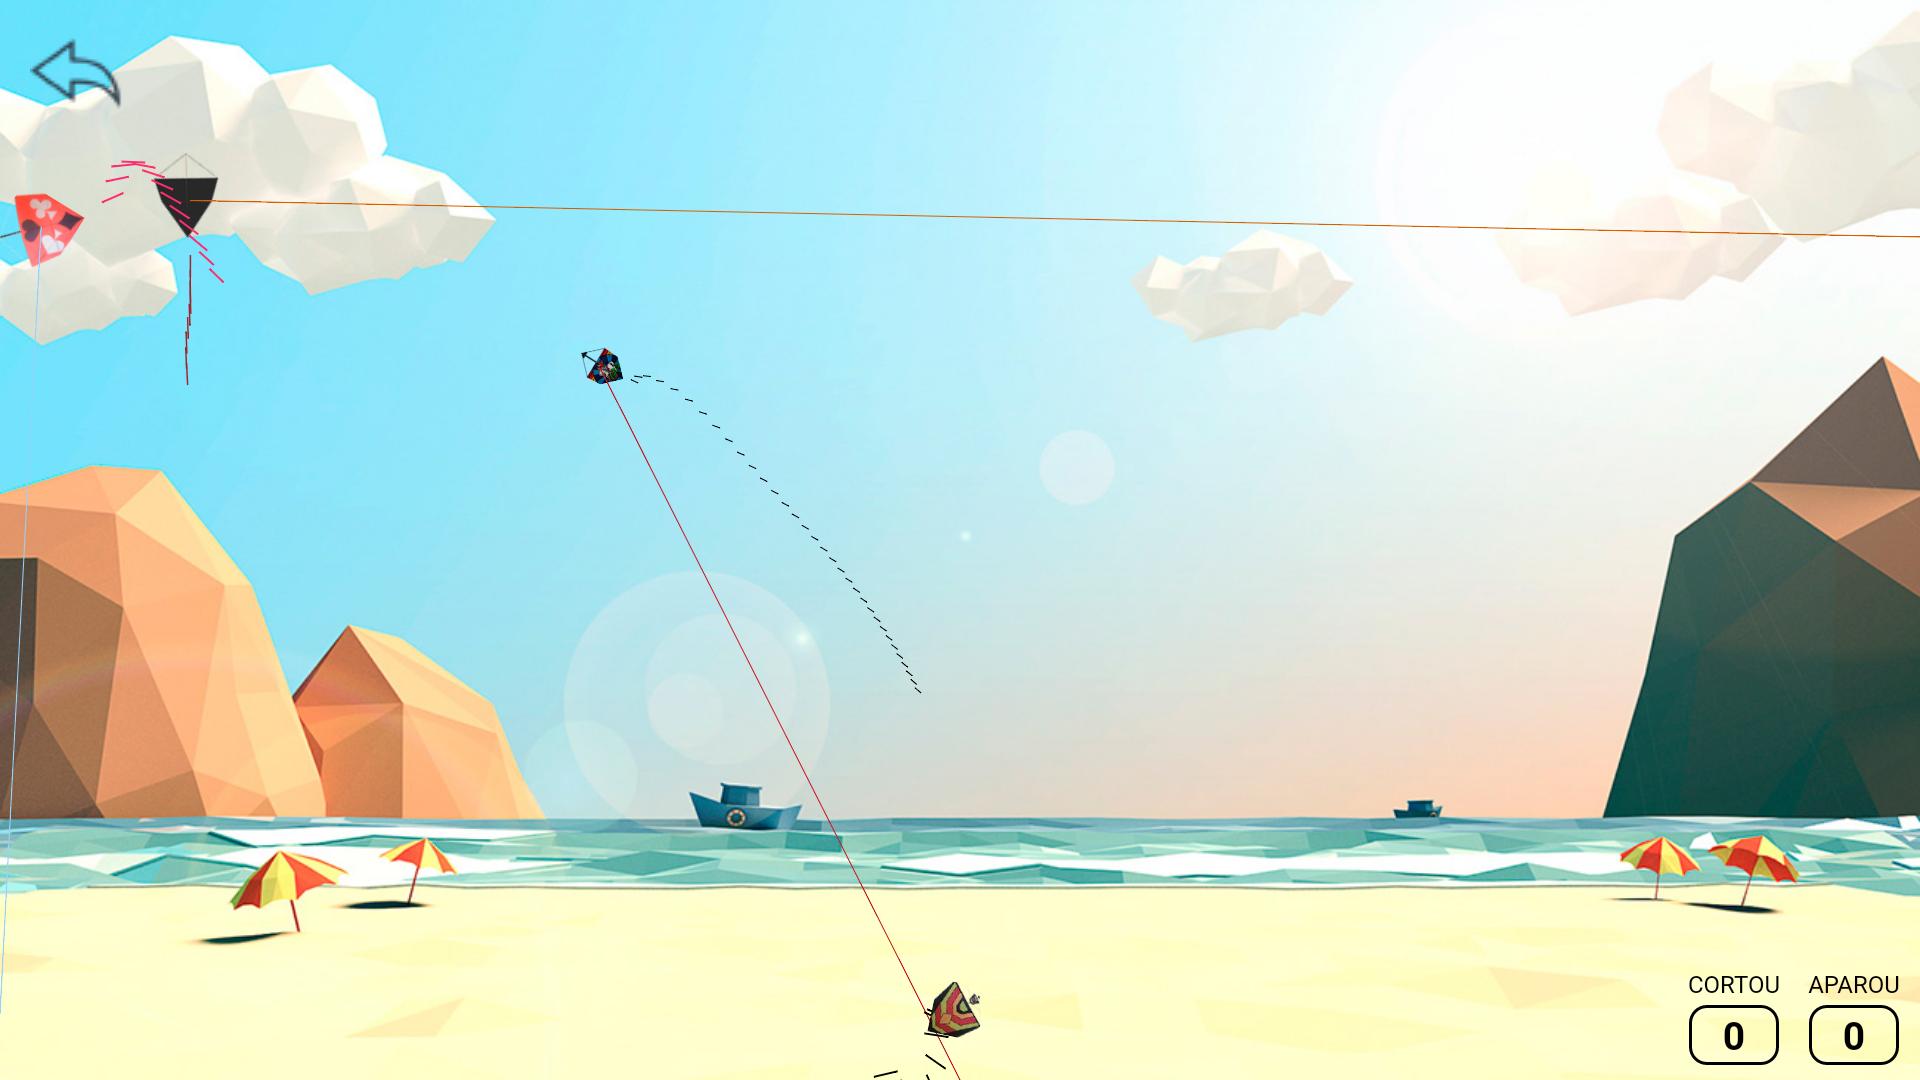 Kite Flying - Layang Layang 4.0 Screenshot 6